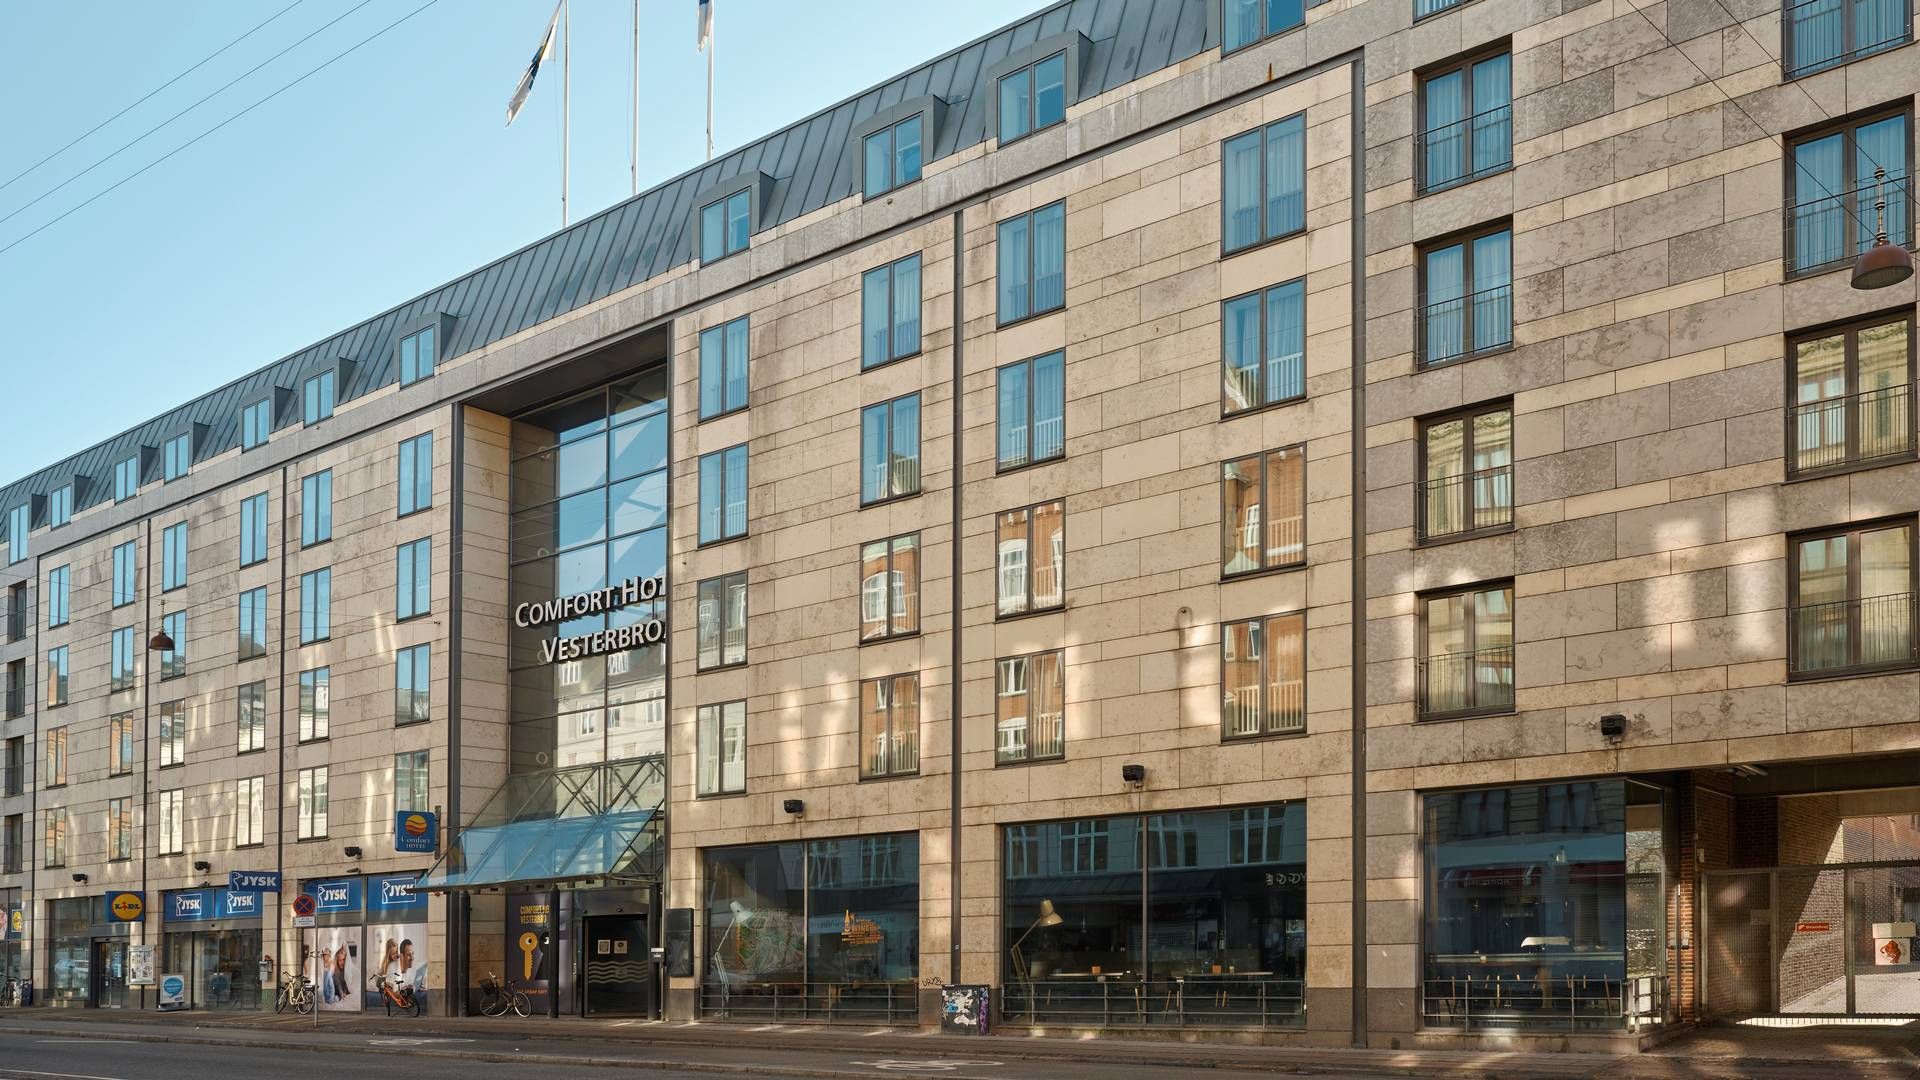 Amerikanske Starwood Capital solgte tidligere på måneden dette hotel på Vesterbro i København for omkring 675 mio. kr. Samlet blev det handlet ejendomme som selskabshandler for over 6 mia. kr. i oktober og november. | Foto: Pr / Comfort Hotel